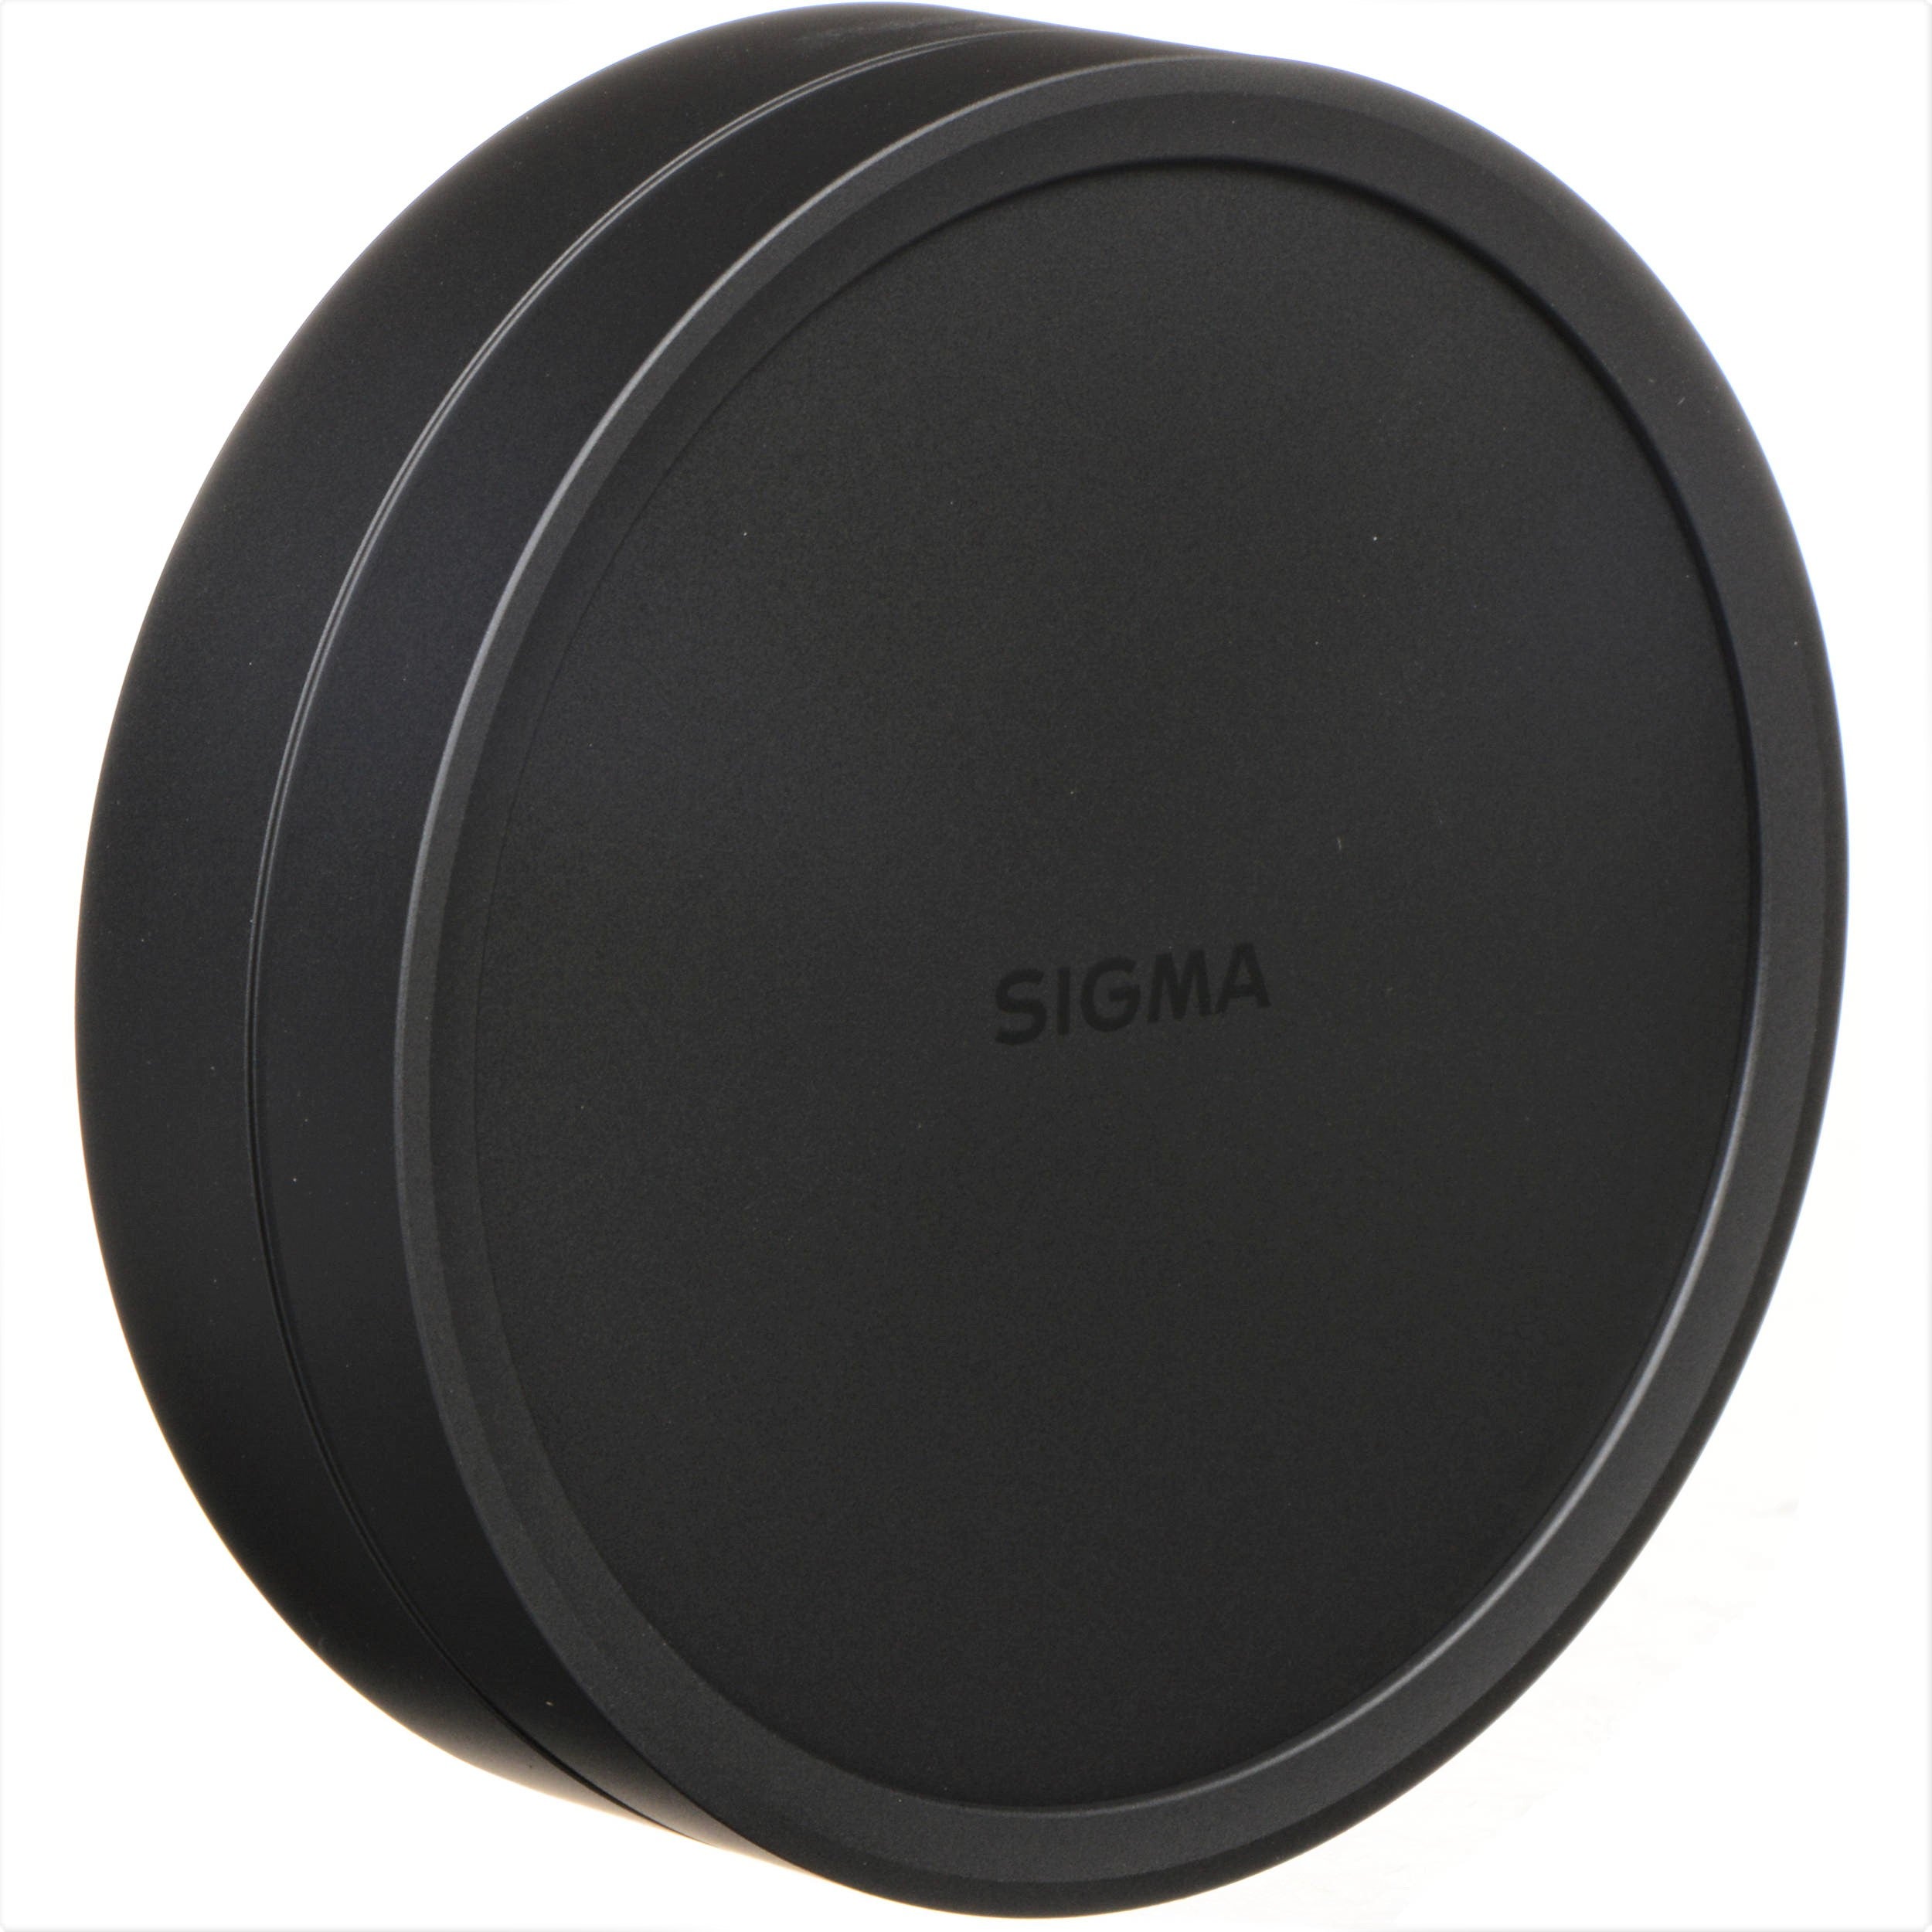 Sigma Lens Cap Cover